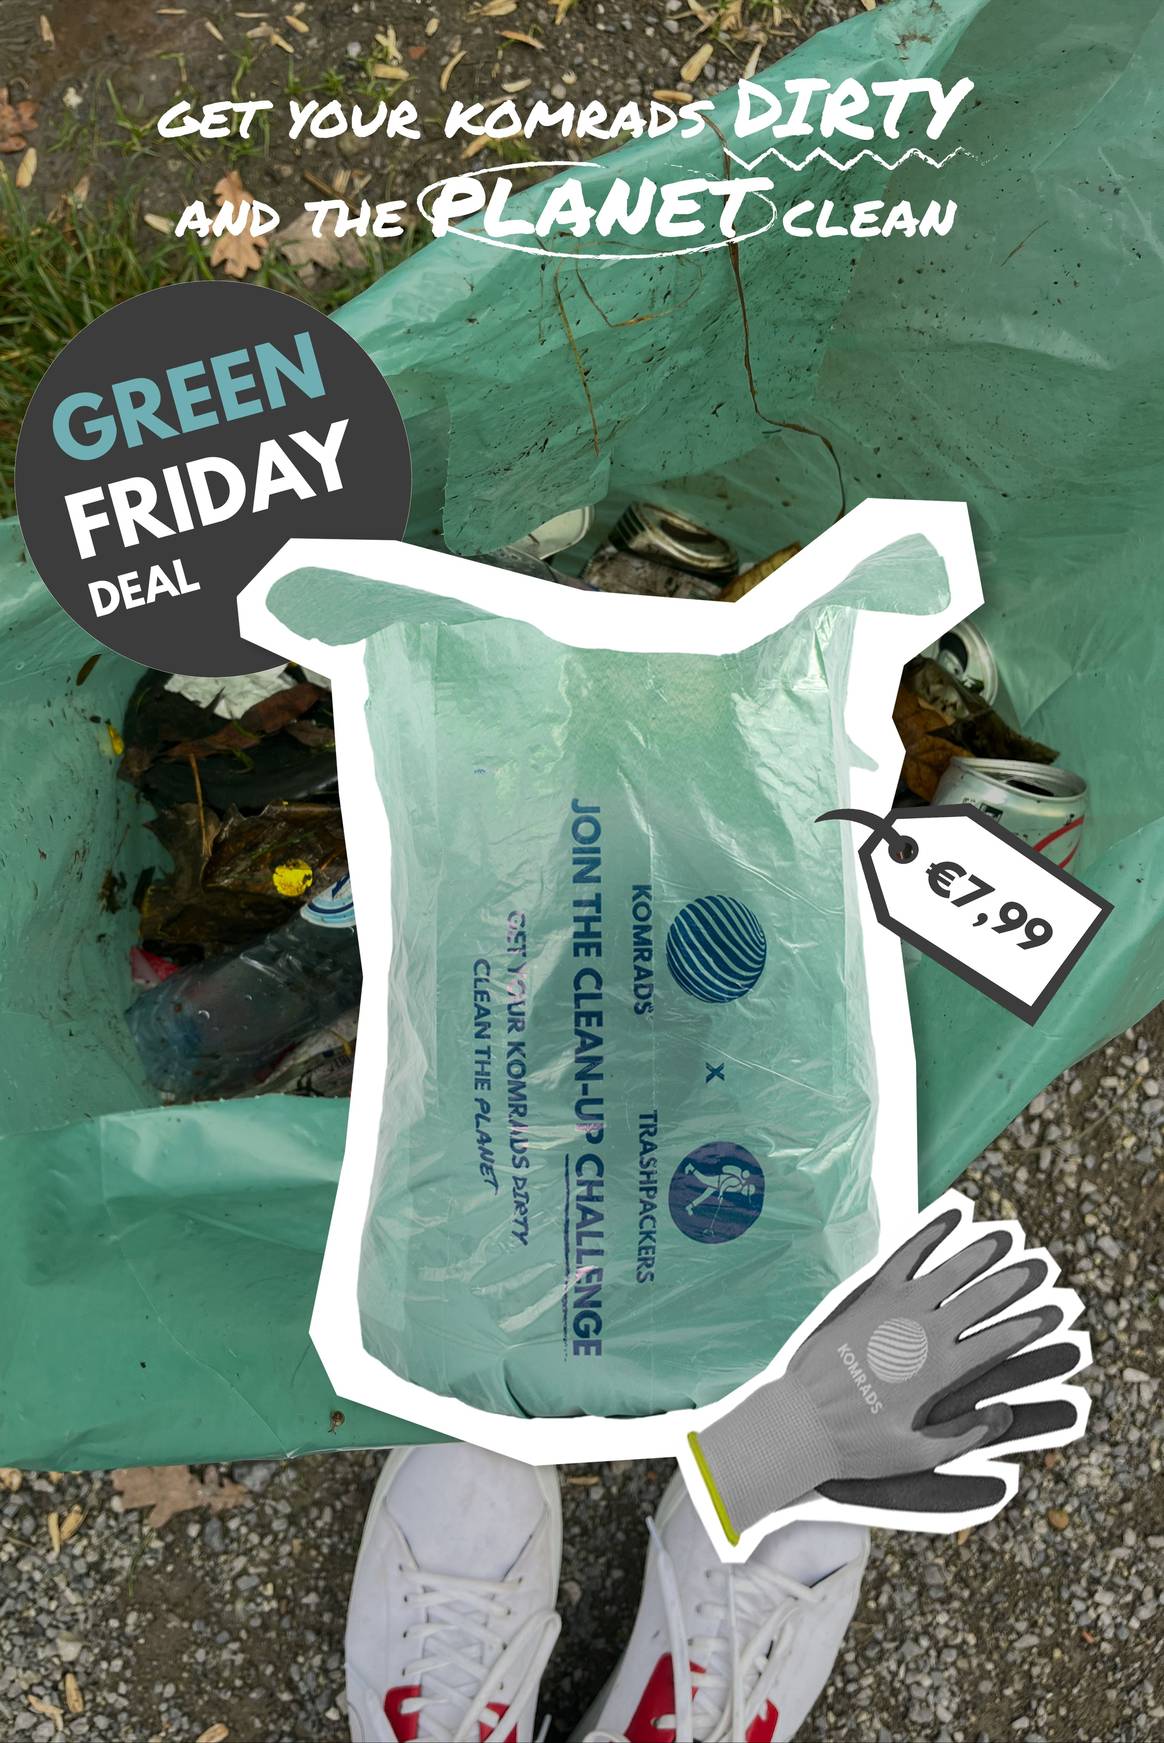 Komrads vende bolsas de basura recicladas y guantes en lugar de zapatillas durante el Black Friday. Imagen: Komrads